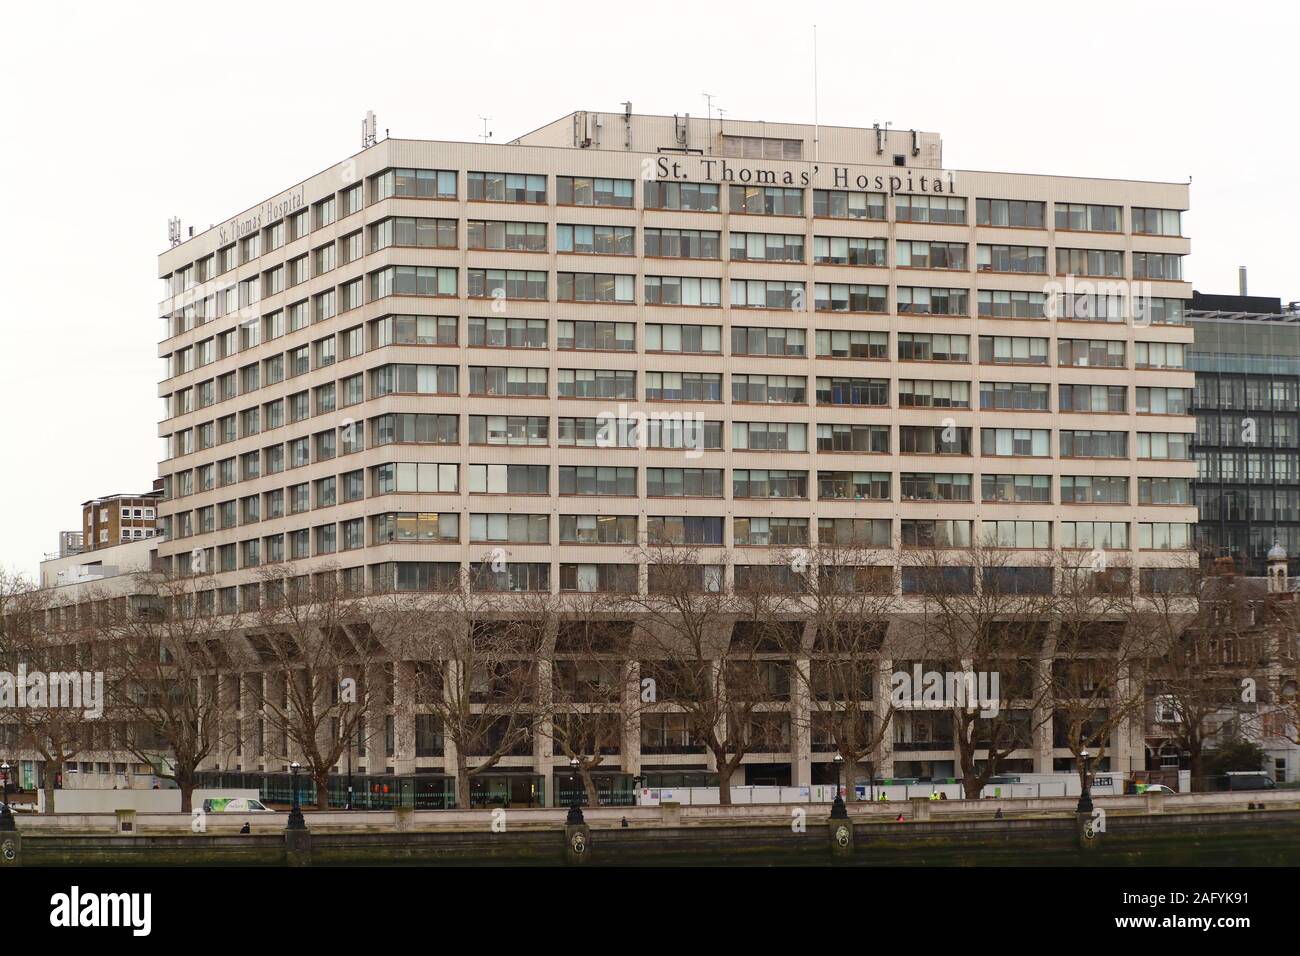 Le St Thomas' Hospital de Londres, UK Banque D'Images